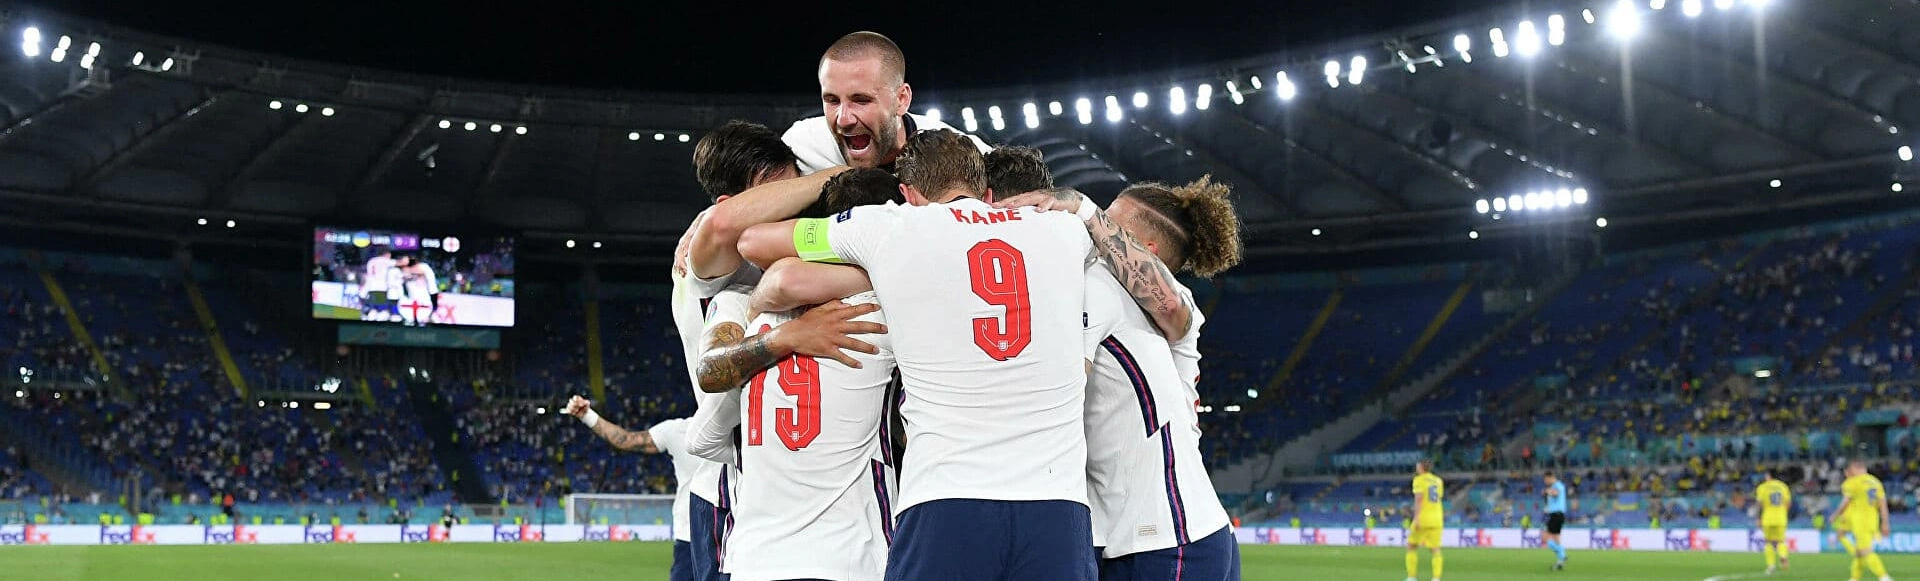 Англия с разгромным счетом обыграла сборную Украины и вышла в полуфинал чемпионата Европы 2020